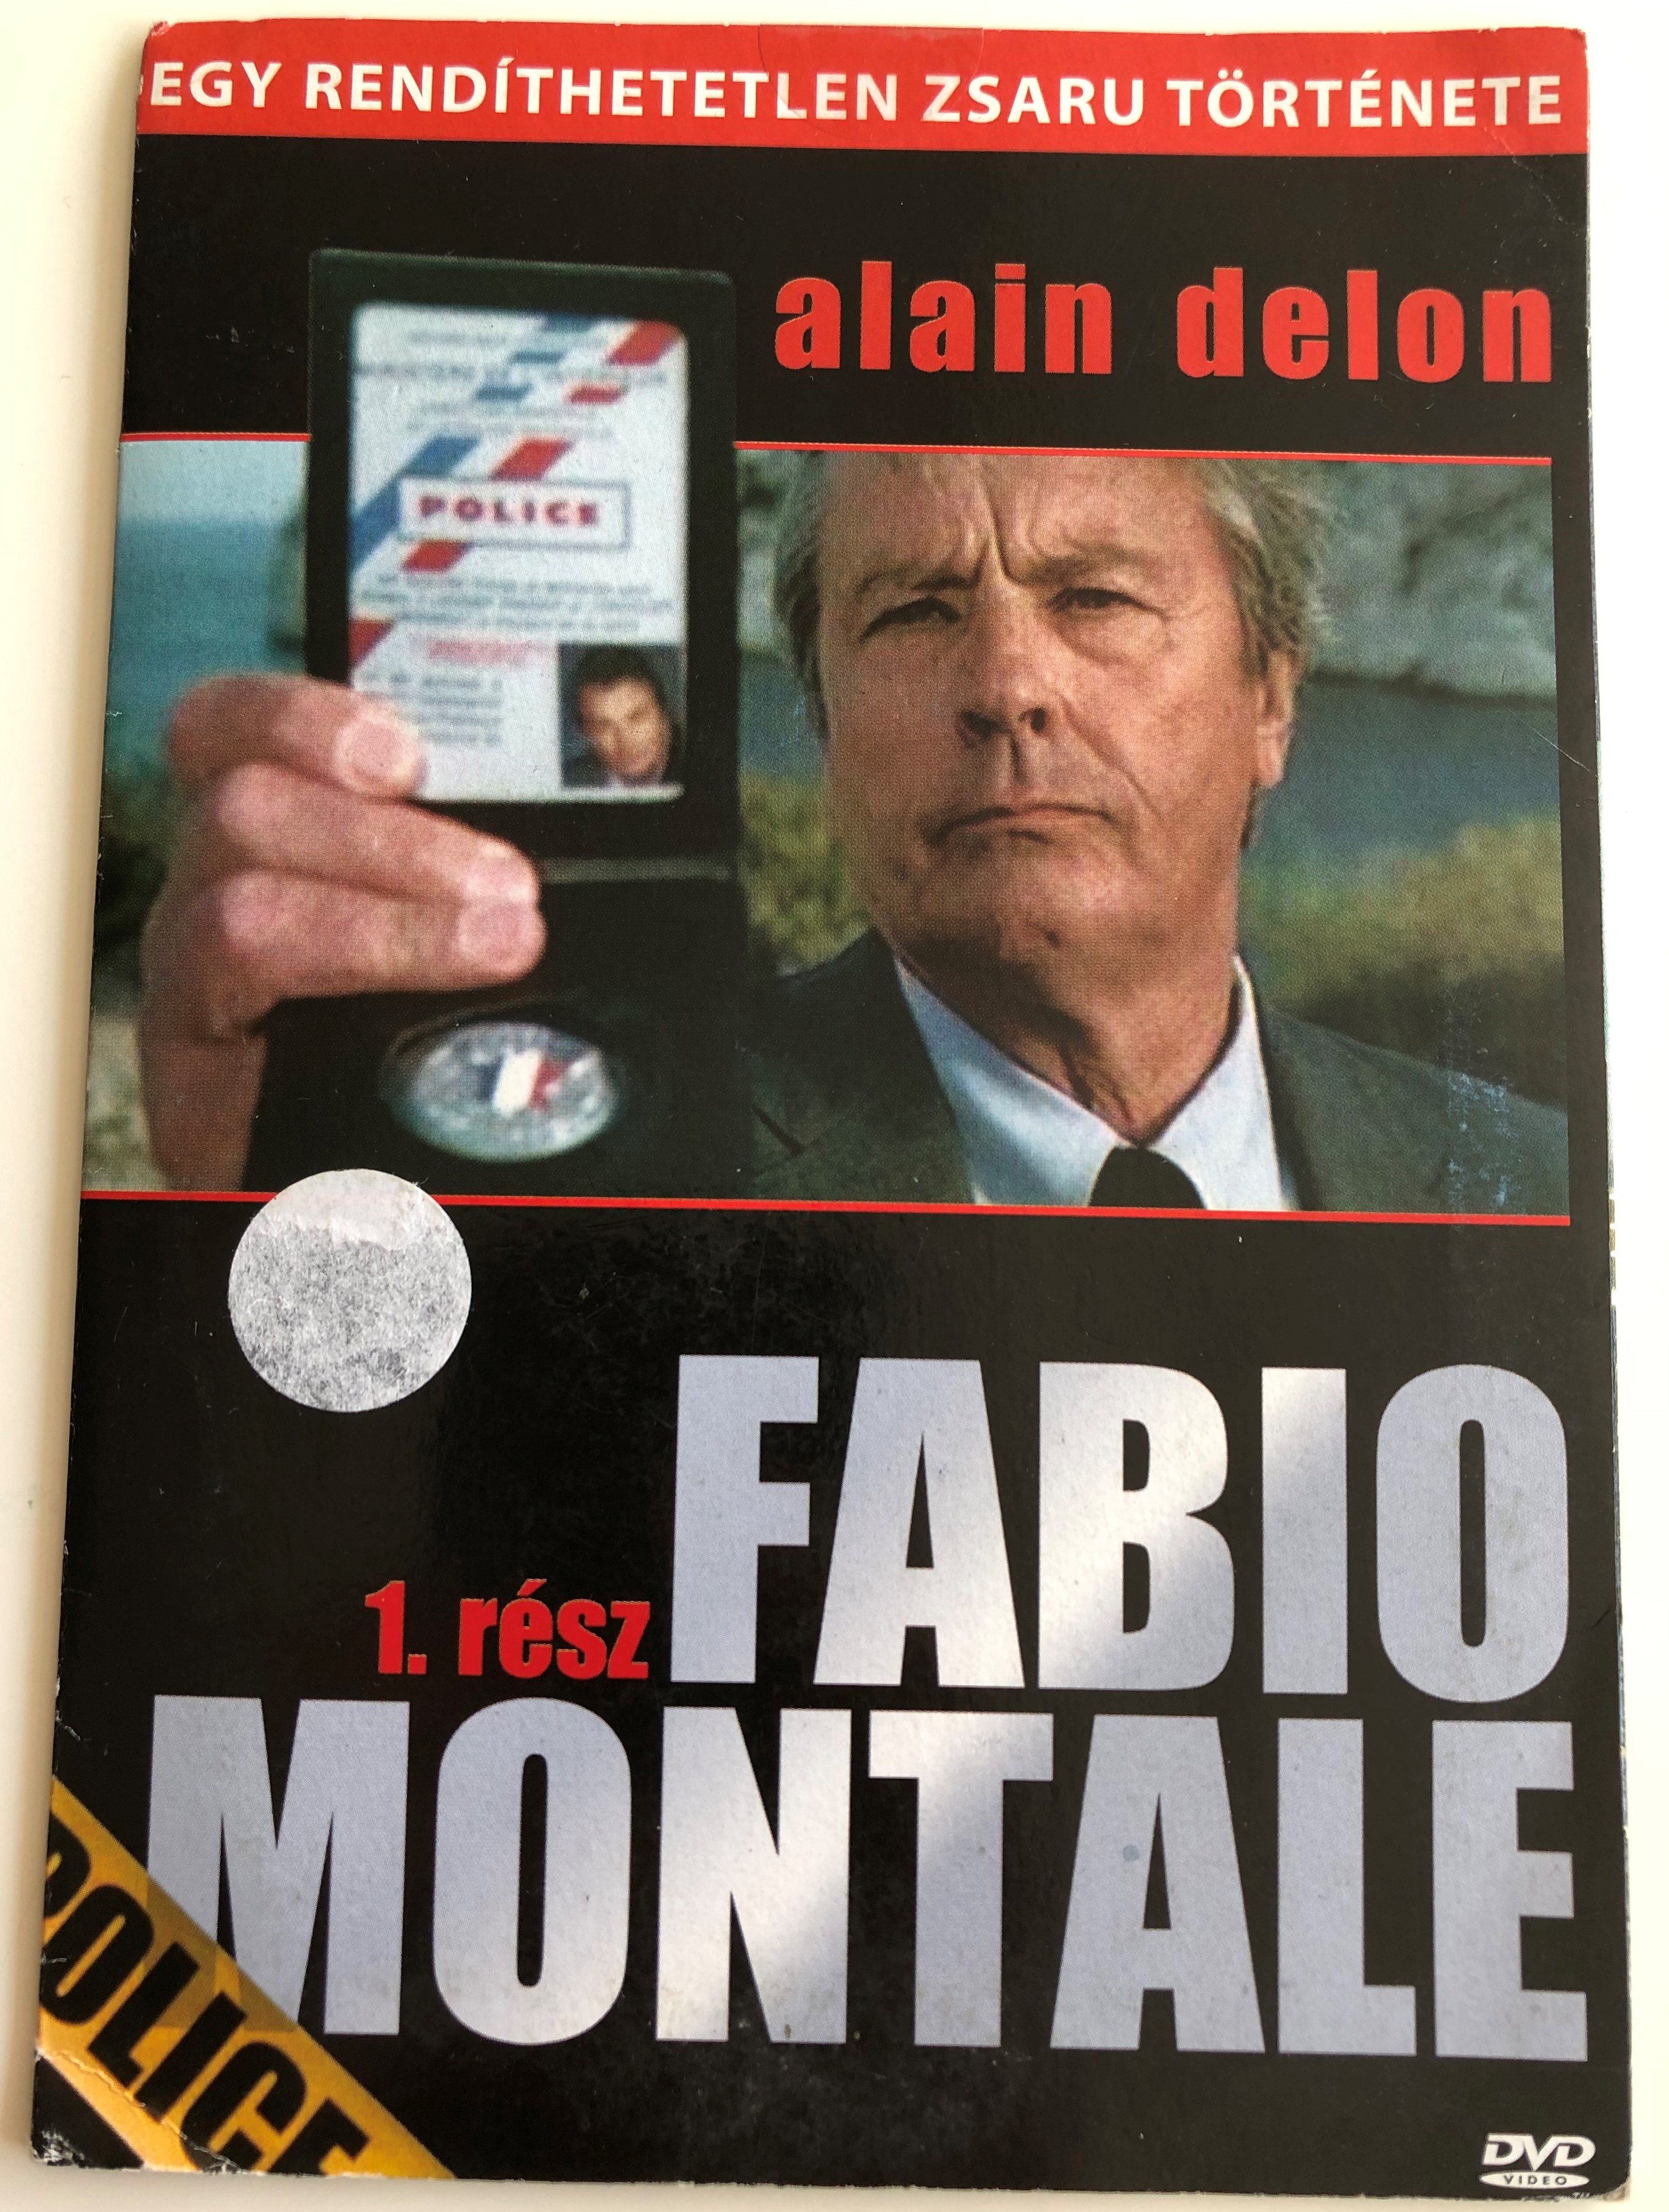 Fabio Montale Part 1 DVD Fabio Montale 1. rész  1.JPG